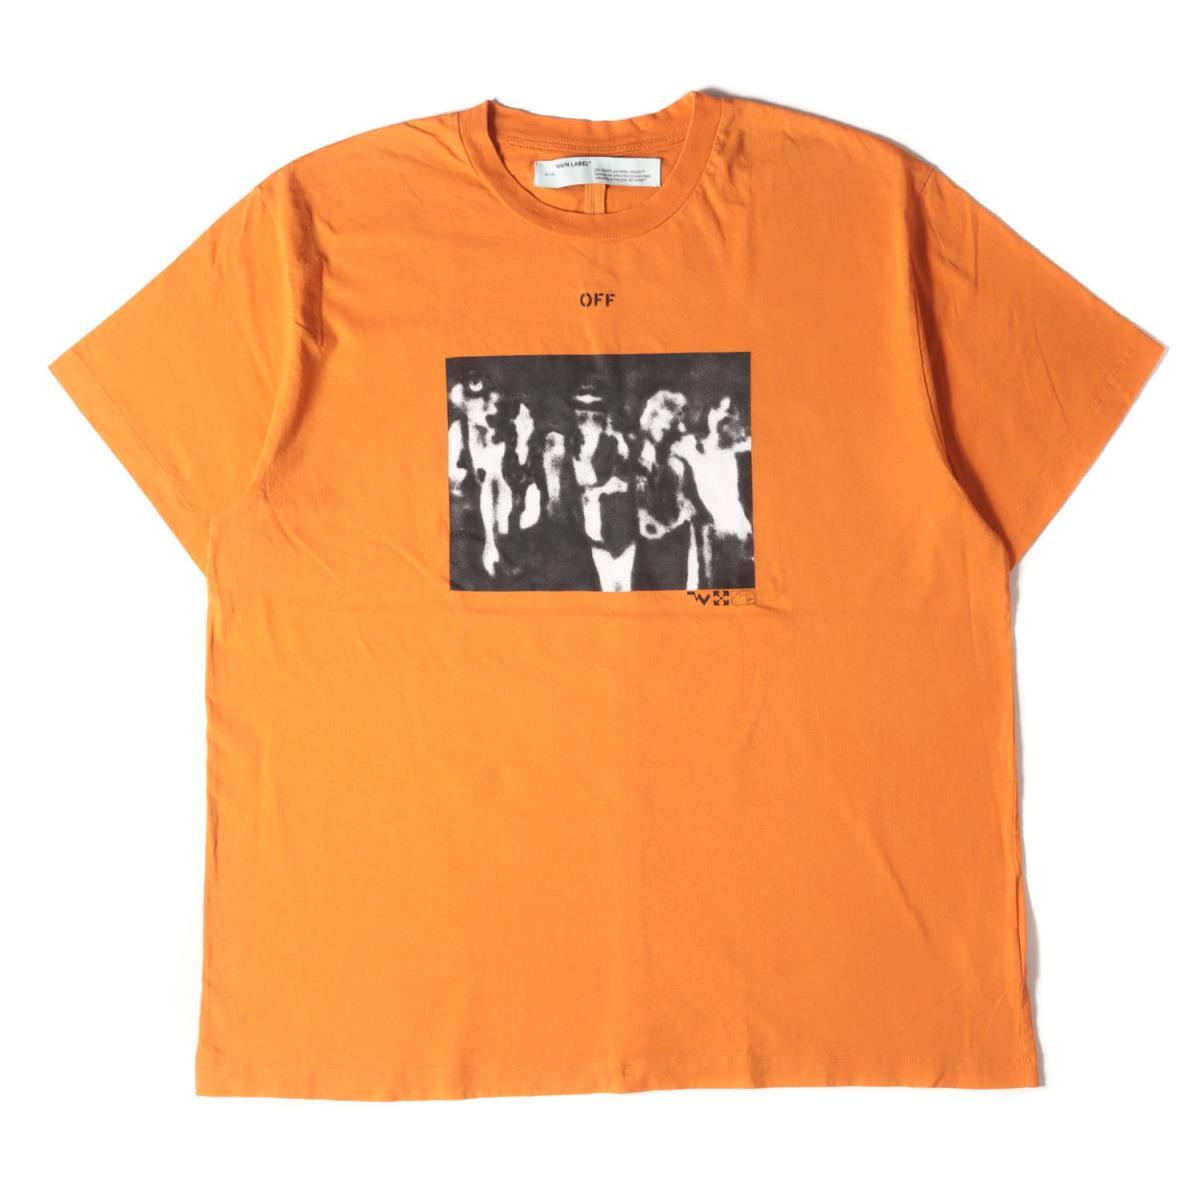 種類豊富な品揃え オレンジ 20SS TEE OVER S/S PAINTING SPRAY アローマークTシャツ スプレー Tシャツ オフホワイト OFF-WHITE L 半袖 トップス 文字、ロゴ